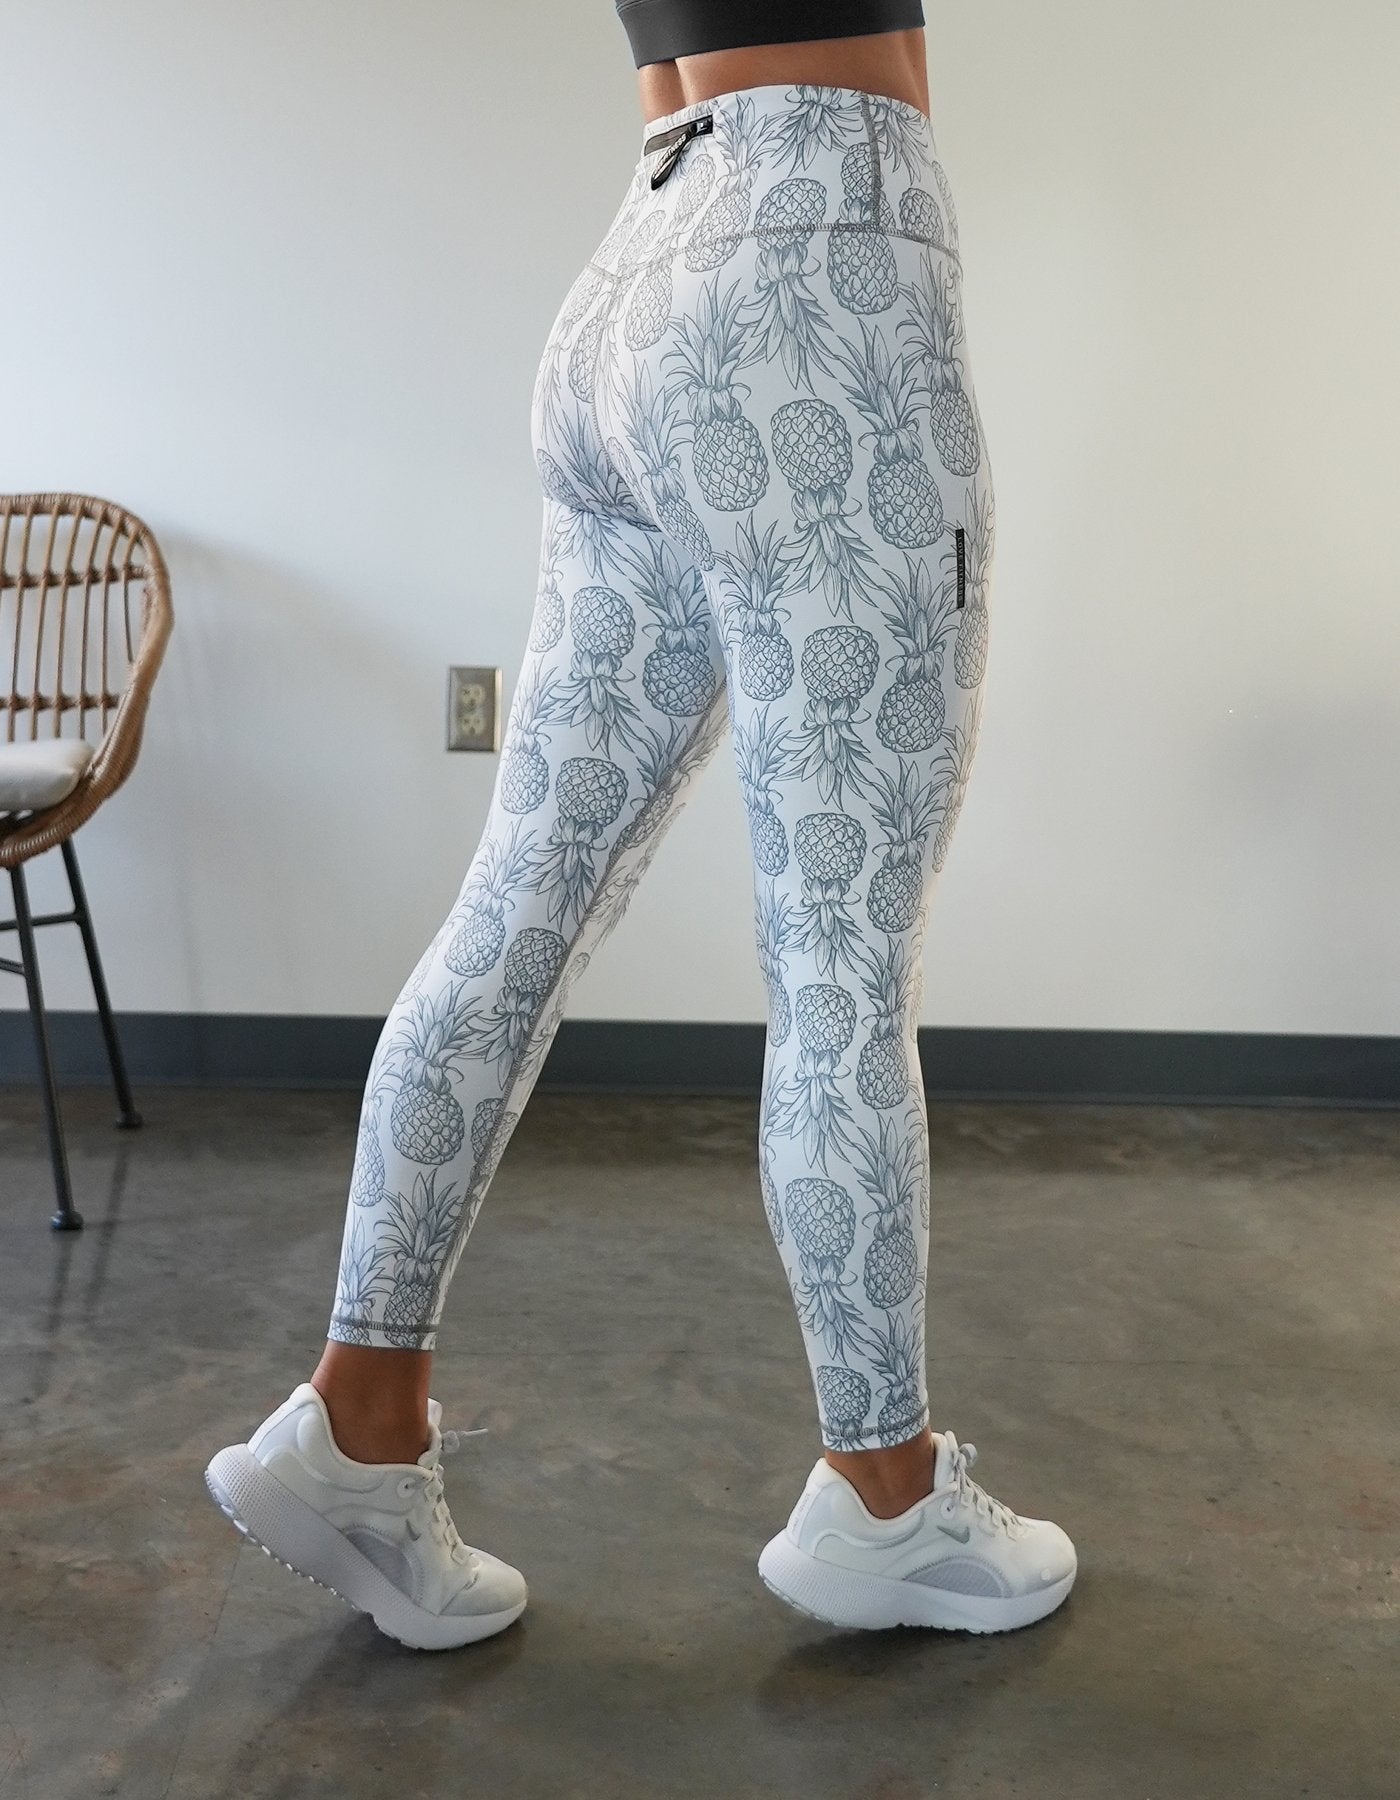 Pineapple Leggings - White  Pineapple leggings, Love fitness apparel,  Sporty outfits